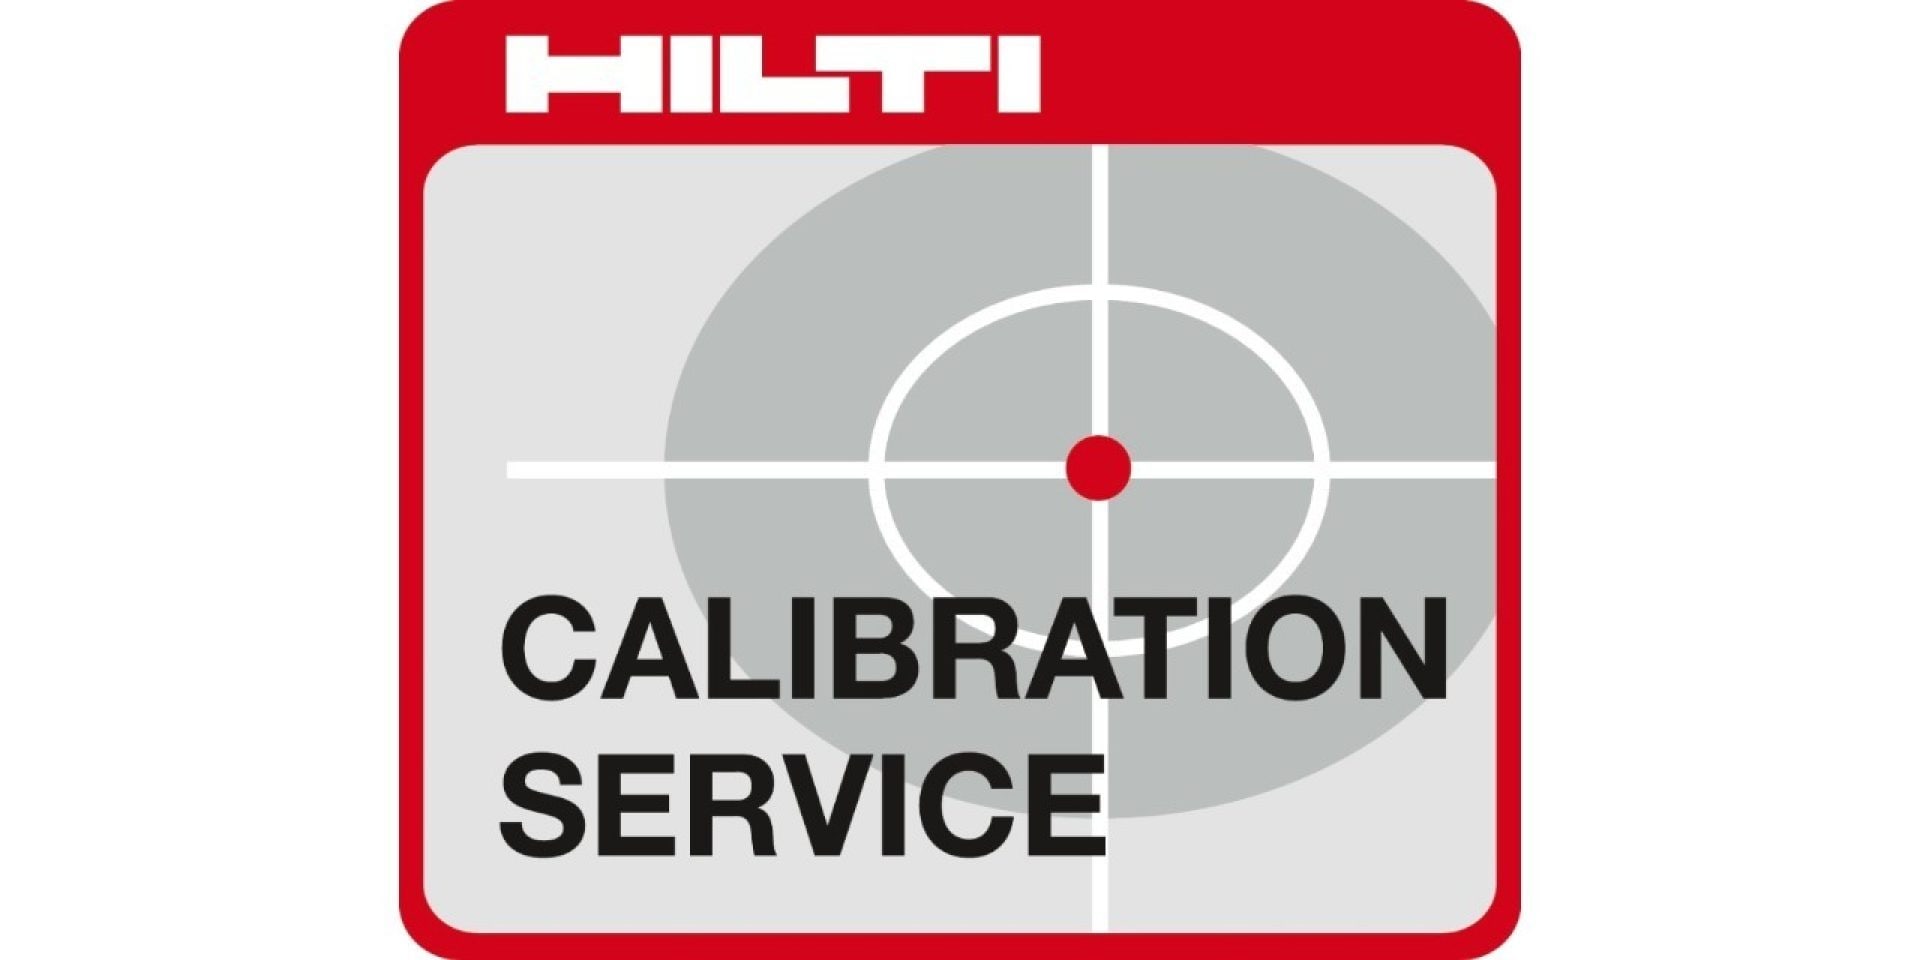 Hilti calibration services